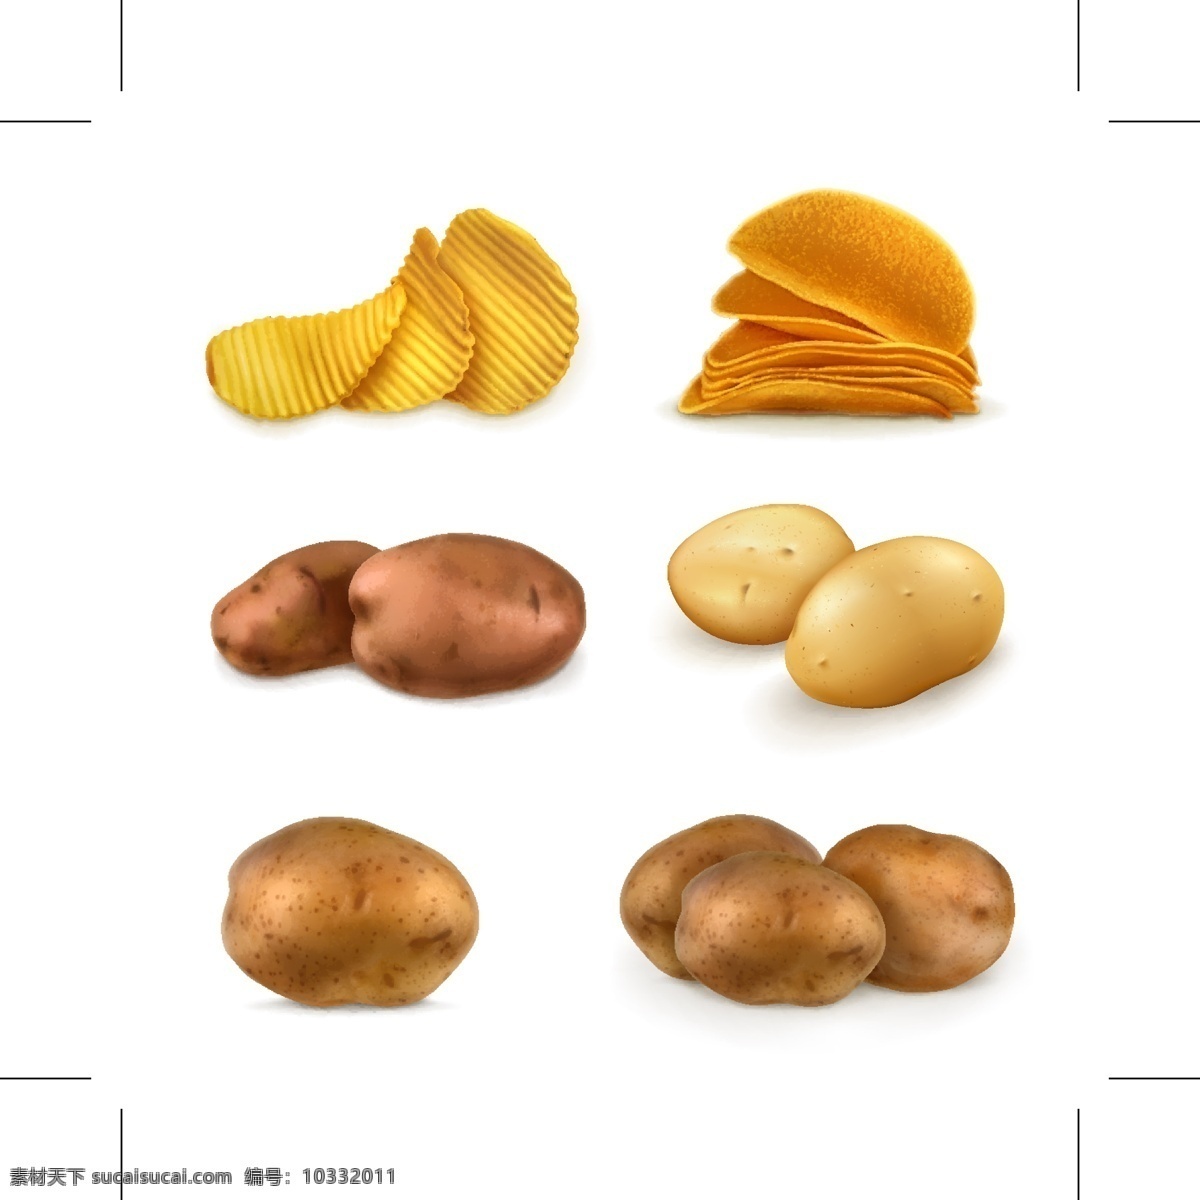 土豆 薯片 图标 烤 马铃薯 矢量图 炸 其他矢量图